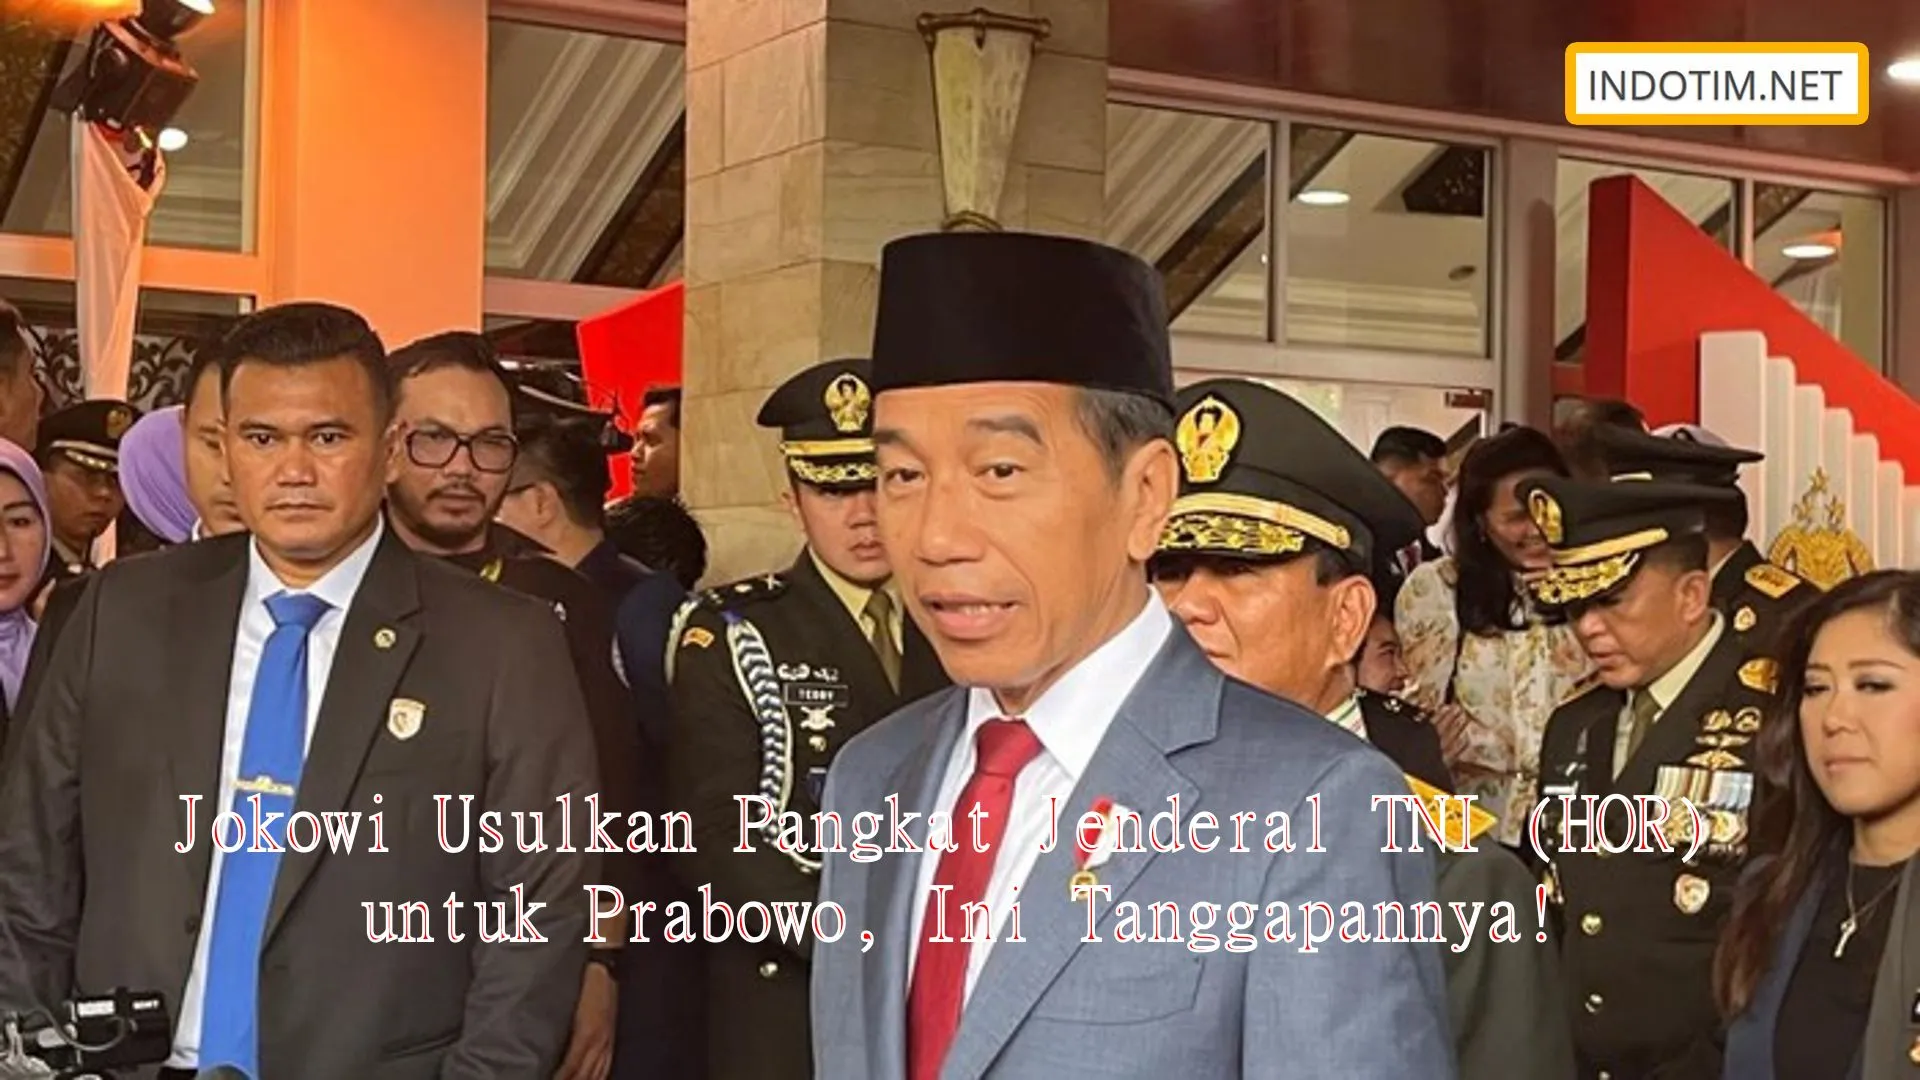 Jokowi Usulkan Pangkat Jenderal TNI (HOR) untuk Prabowo, Ini Tanggapannya!